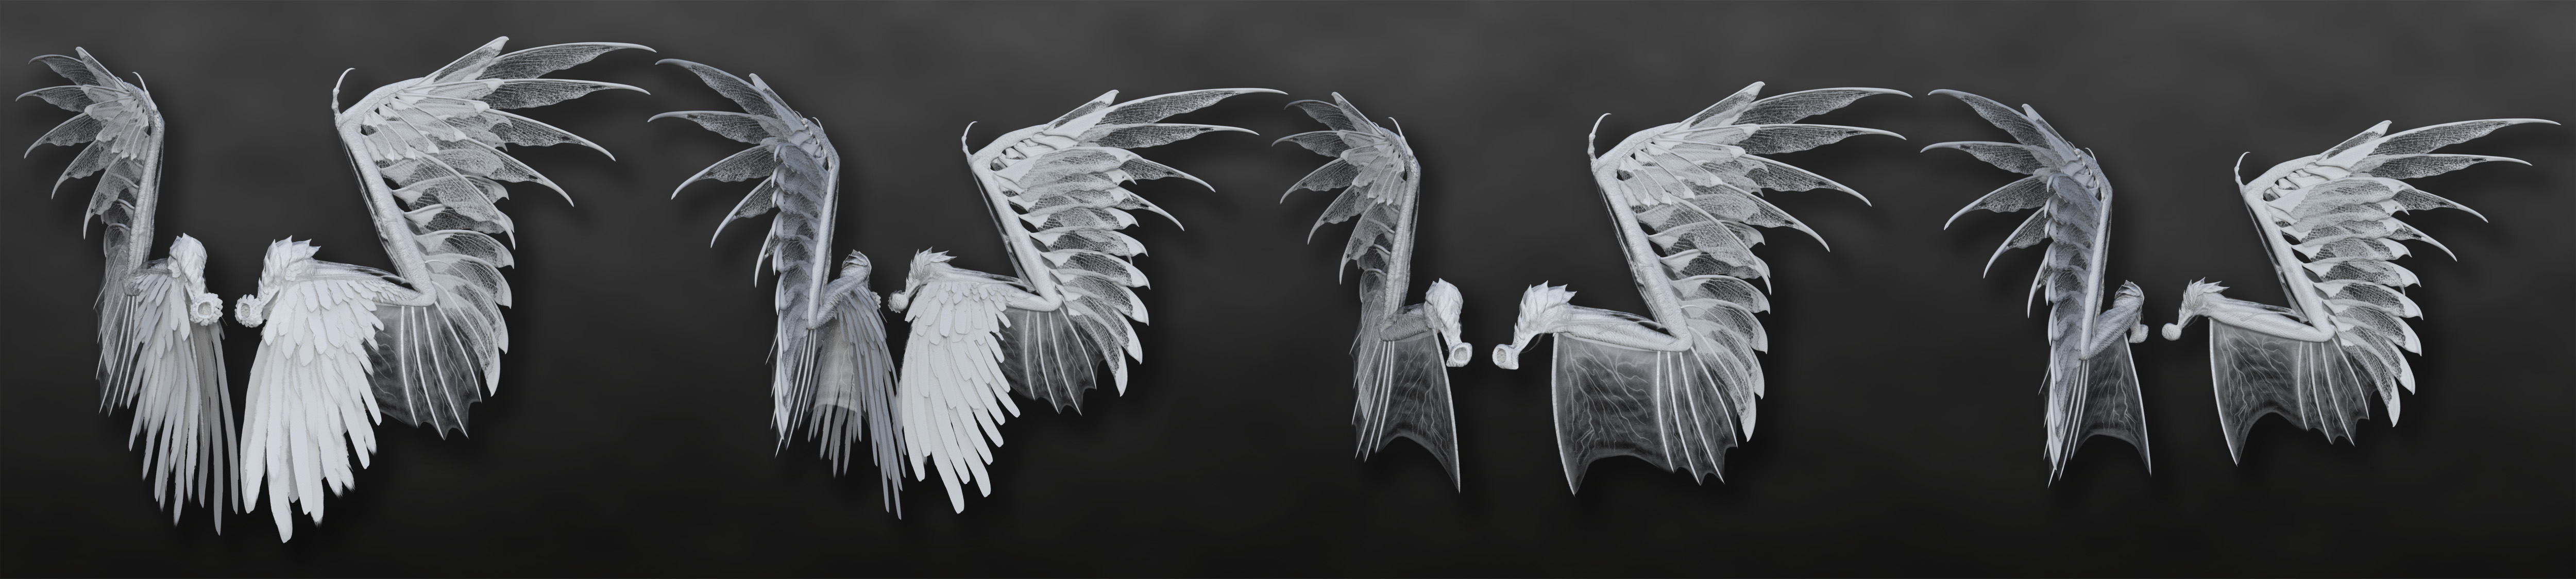 Arki's Wings by: Arki, 3D Models by Daz 3D